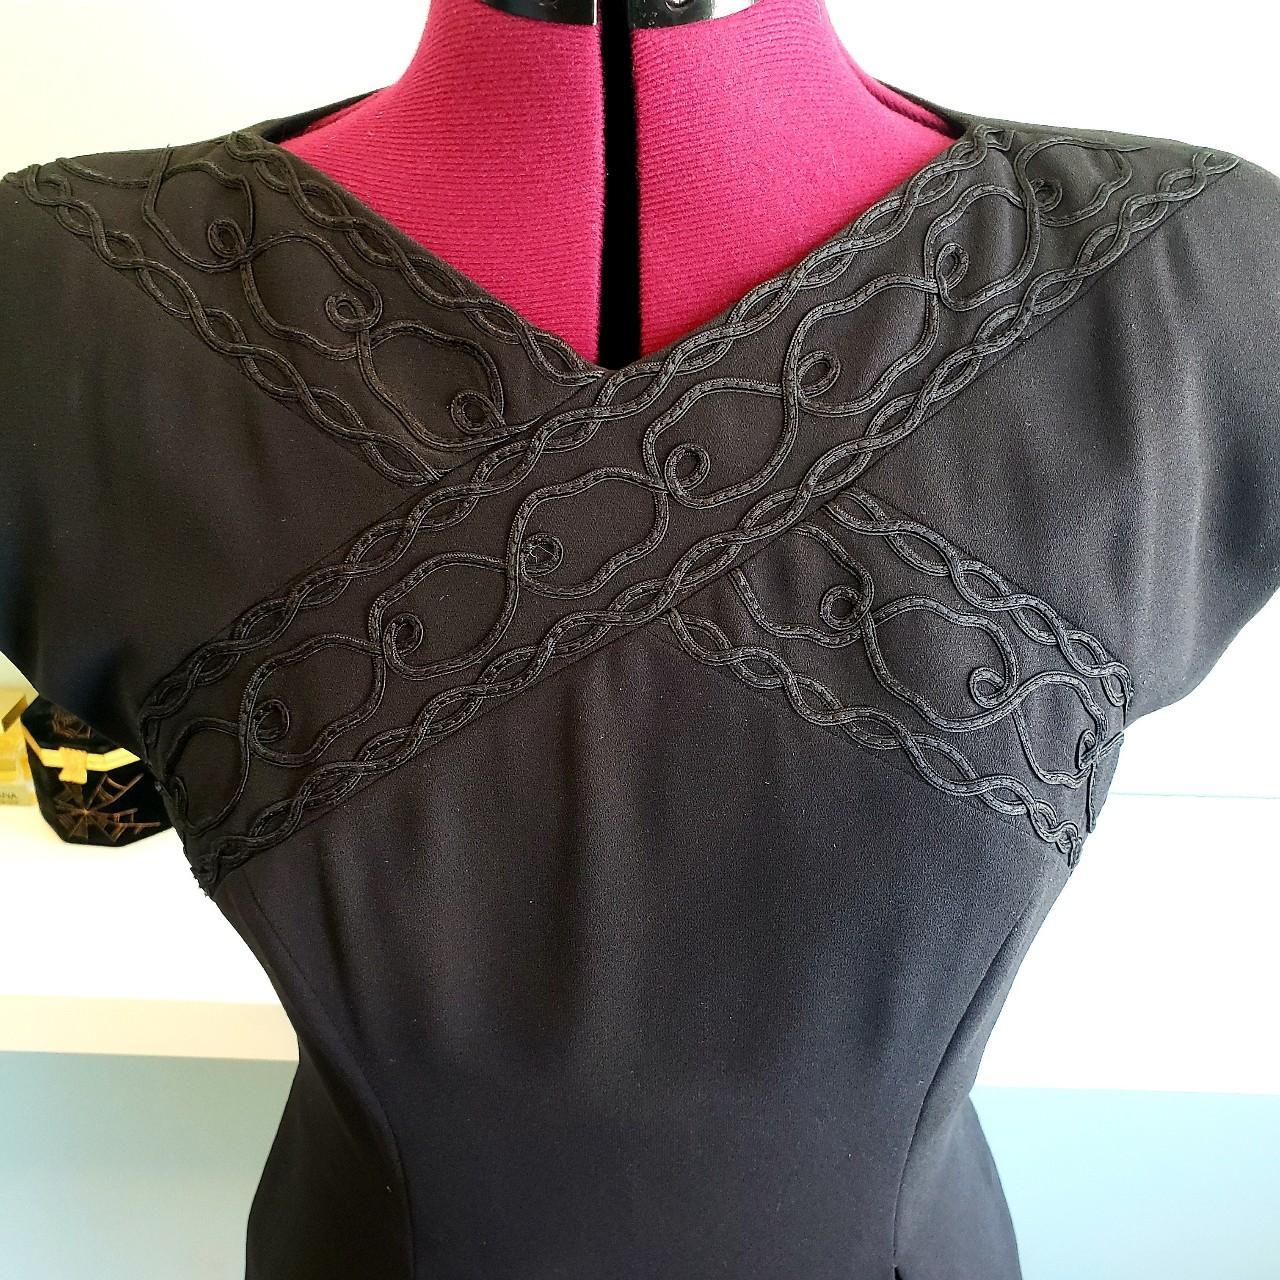 Product Image 3 - 90s Vintage Liz Claiborne Dress

Size